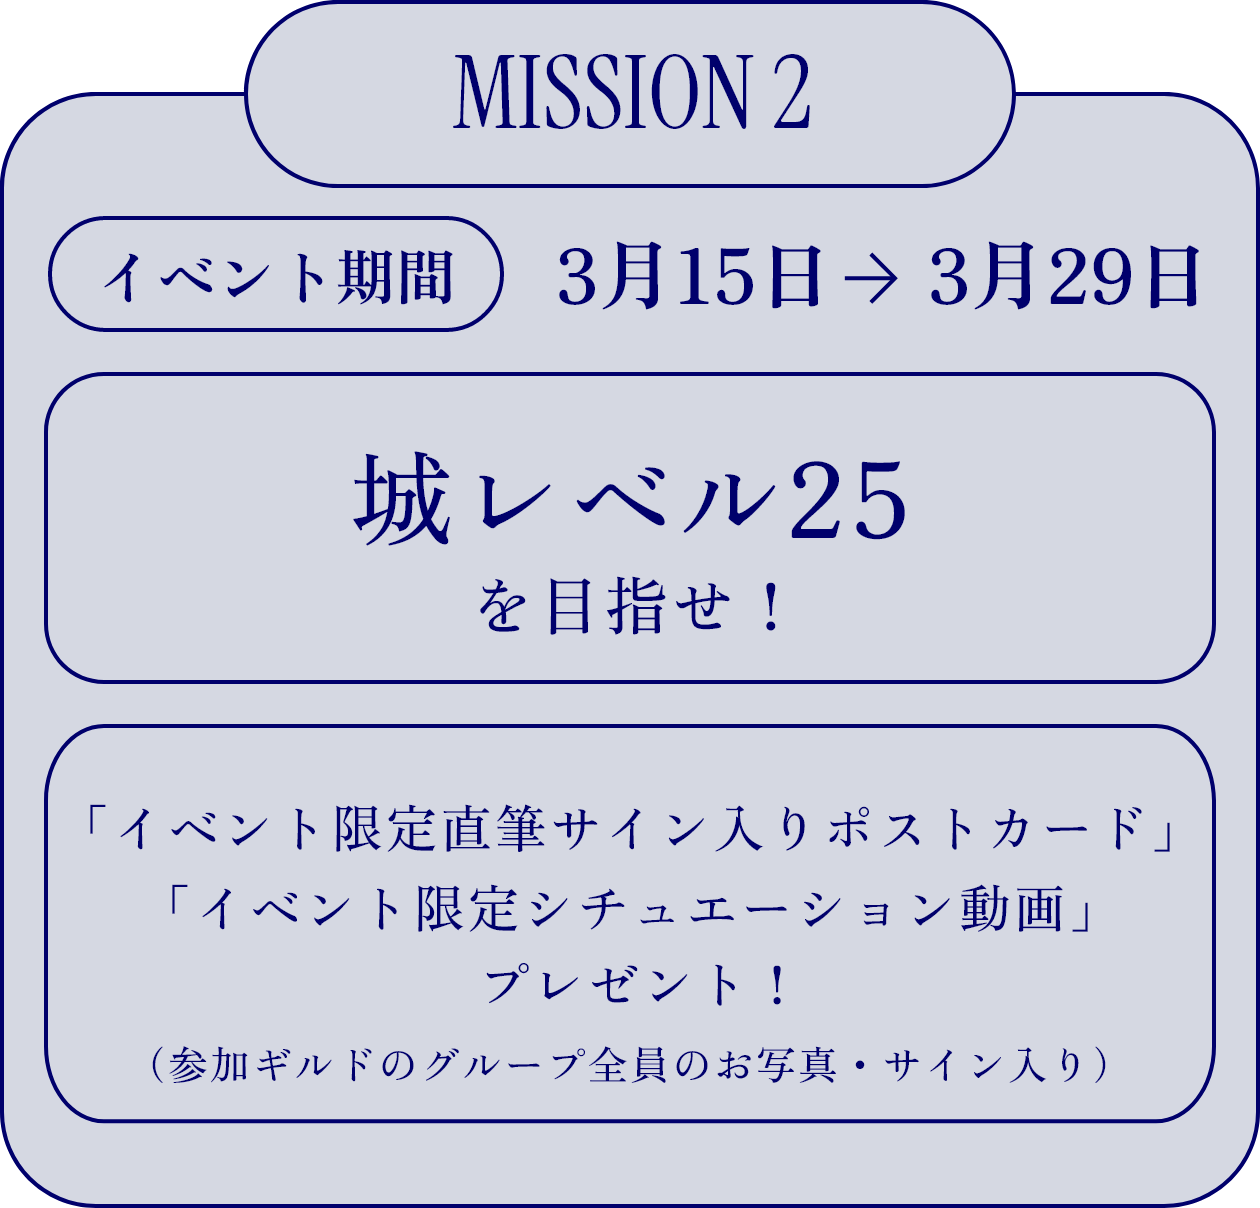 MISSION 2